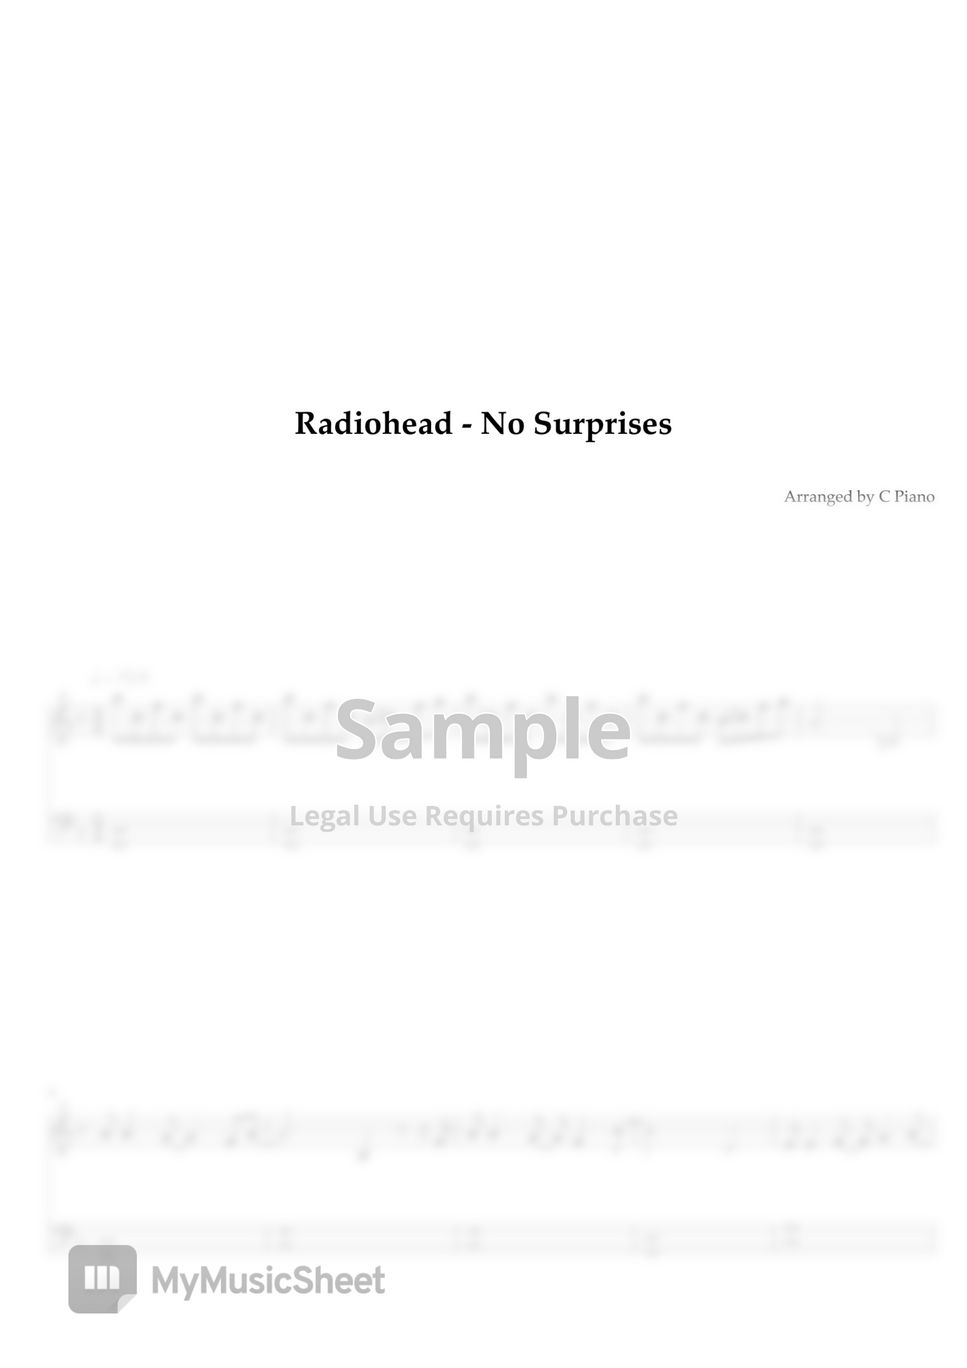 Radiohead - No Surprises (Easy Version) by C Piano